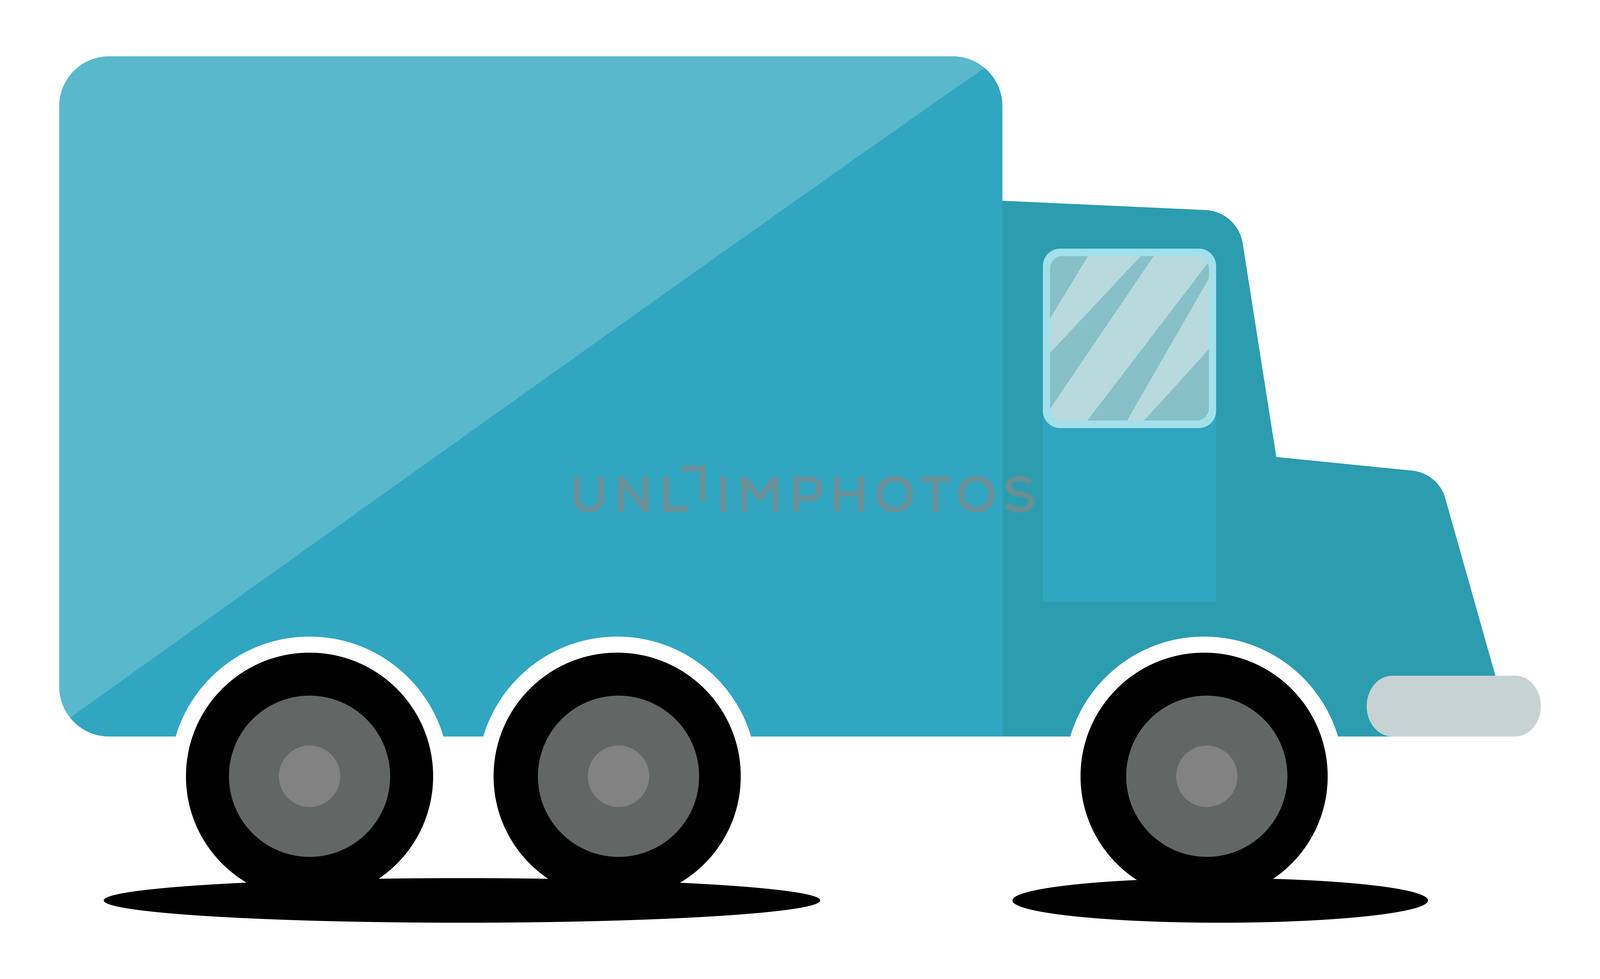 Blue truck, illustration, vector on white background